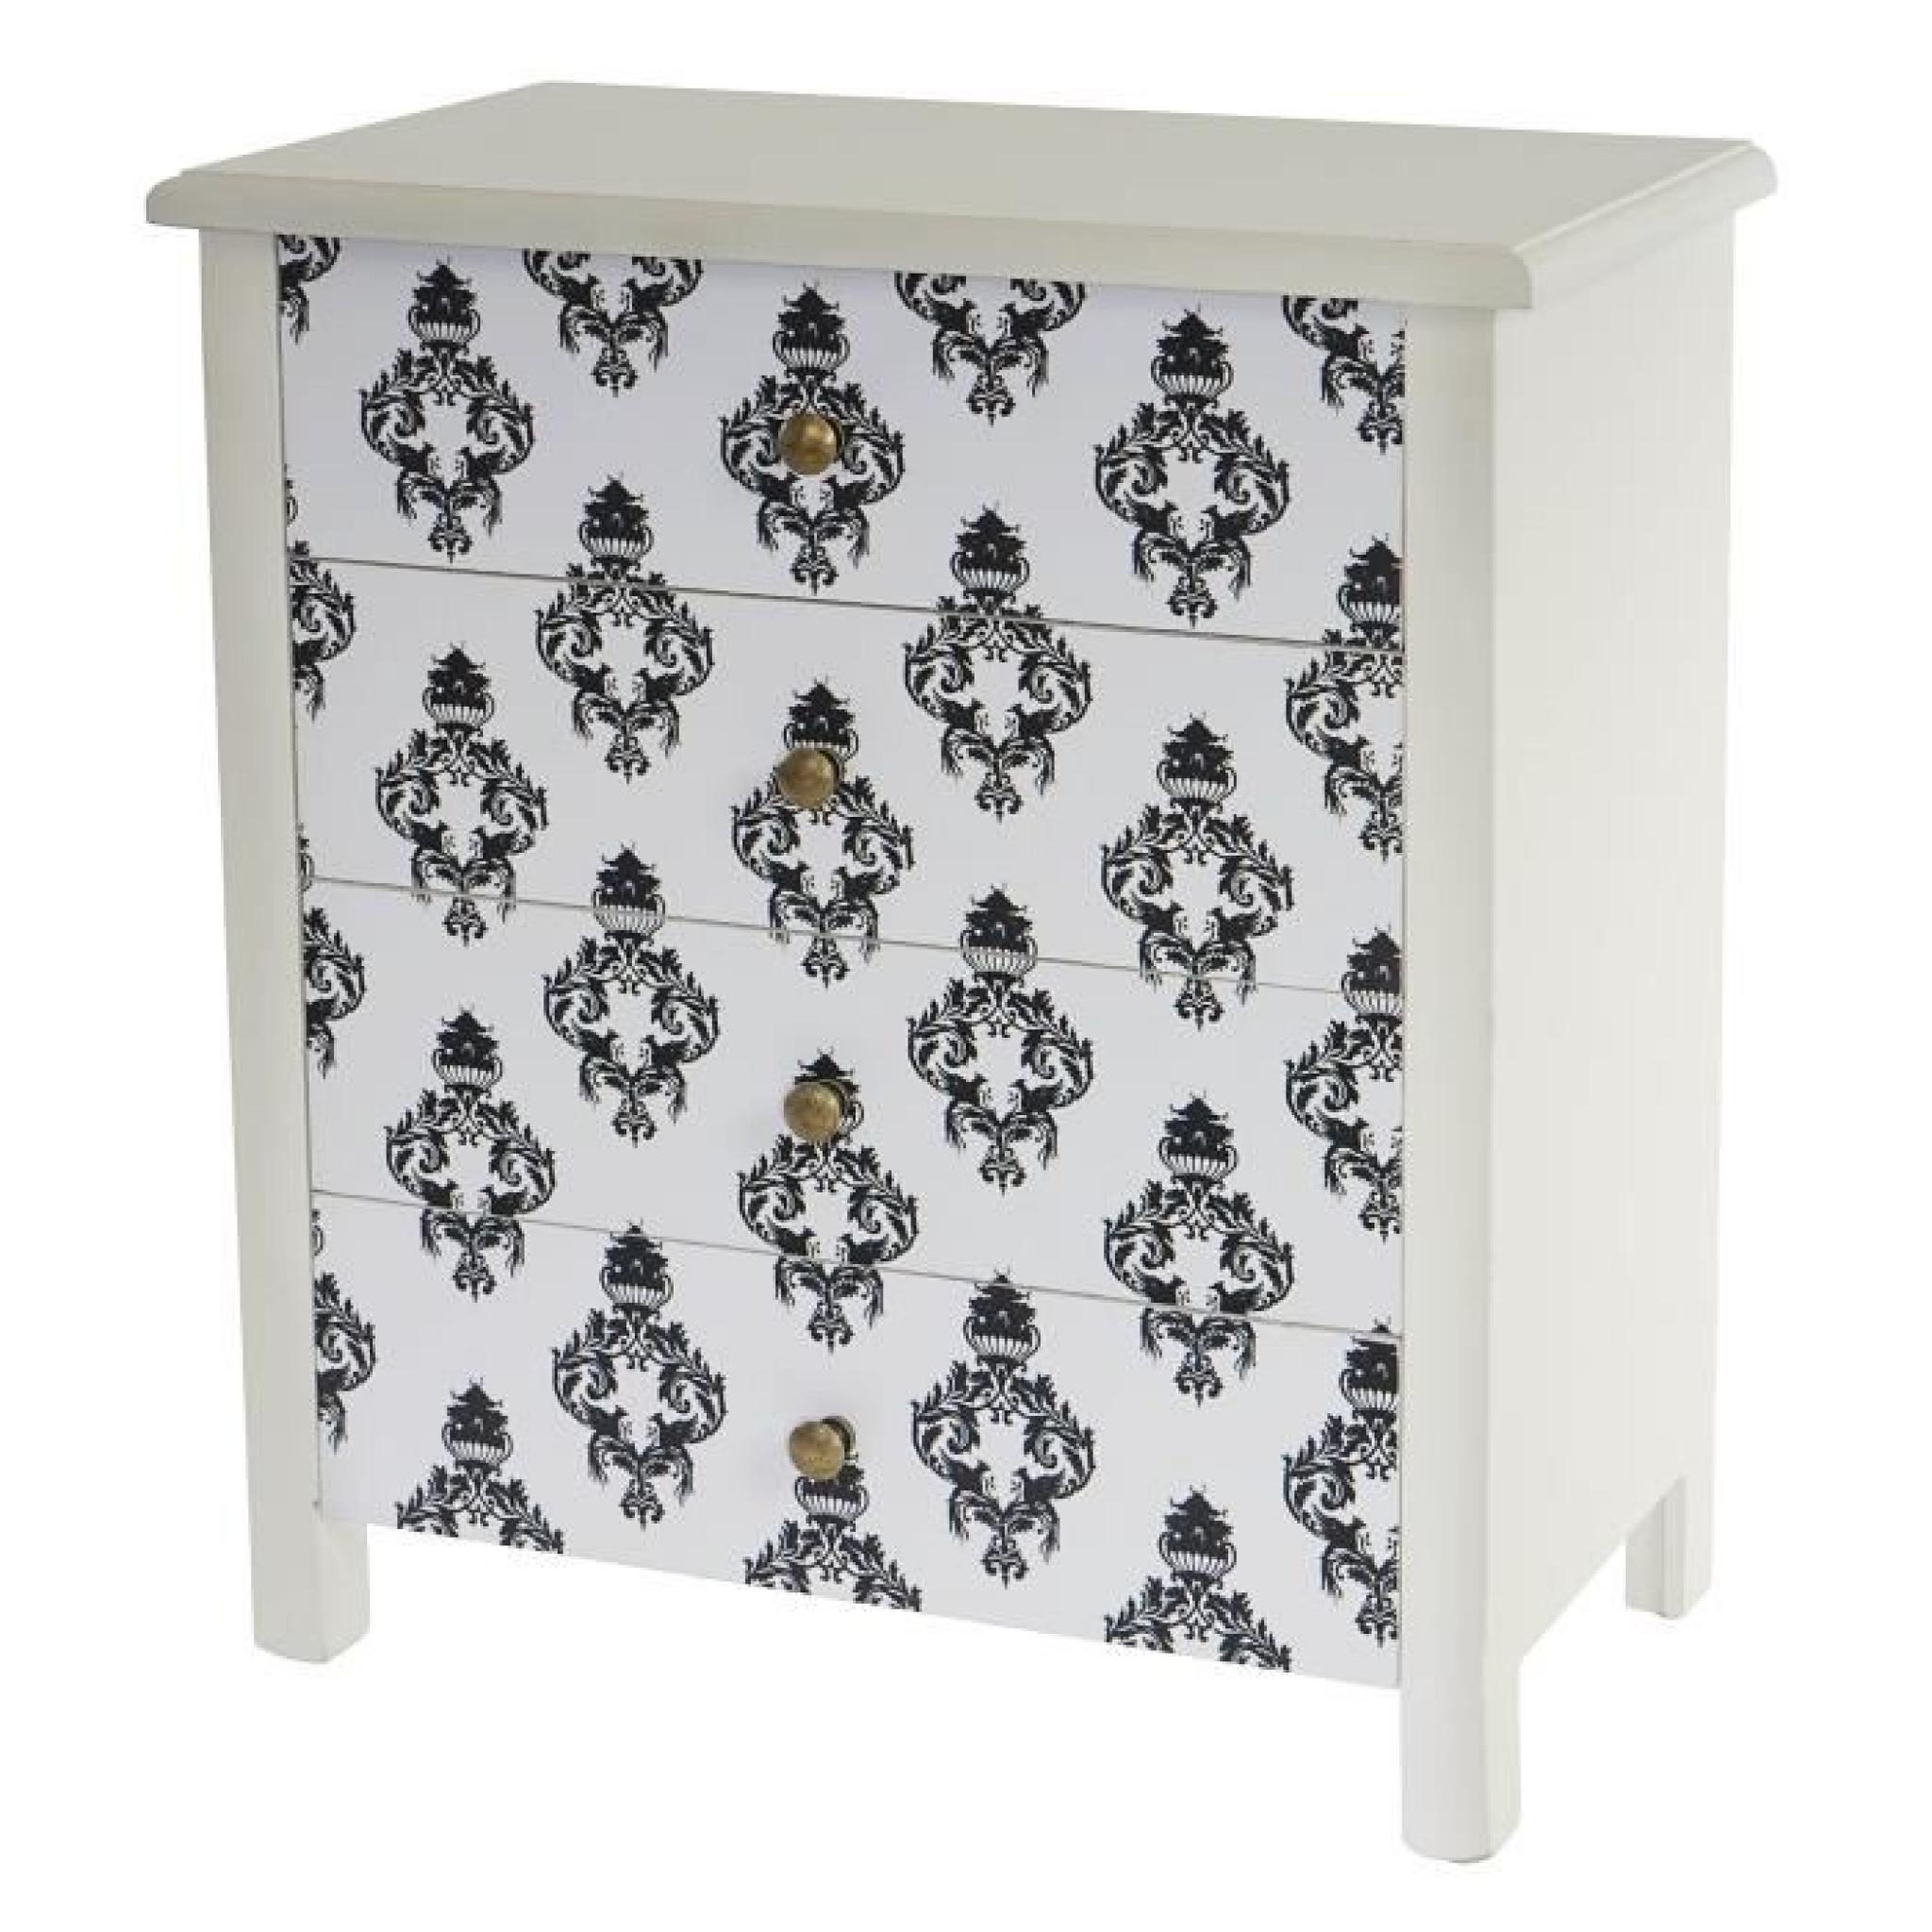 Commode Luton armoire table d'appoint chevet,66x60x33cm, motif baroque.